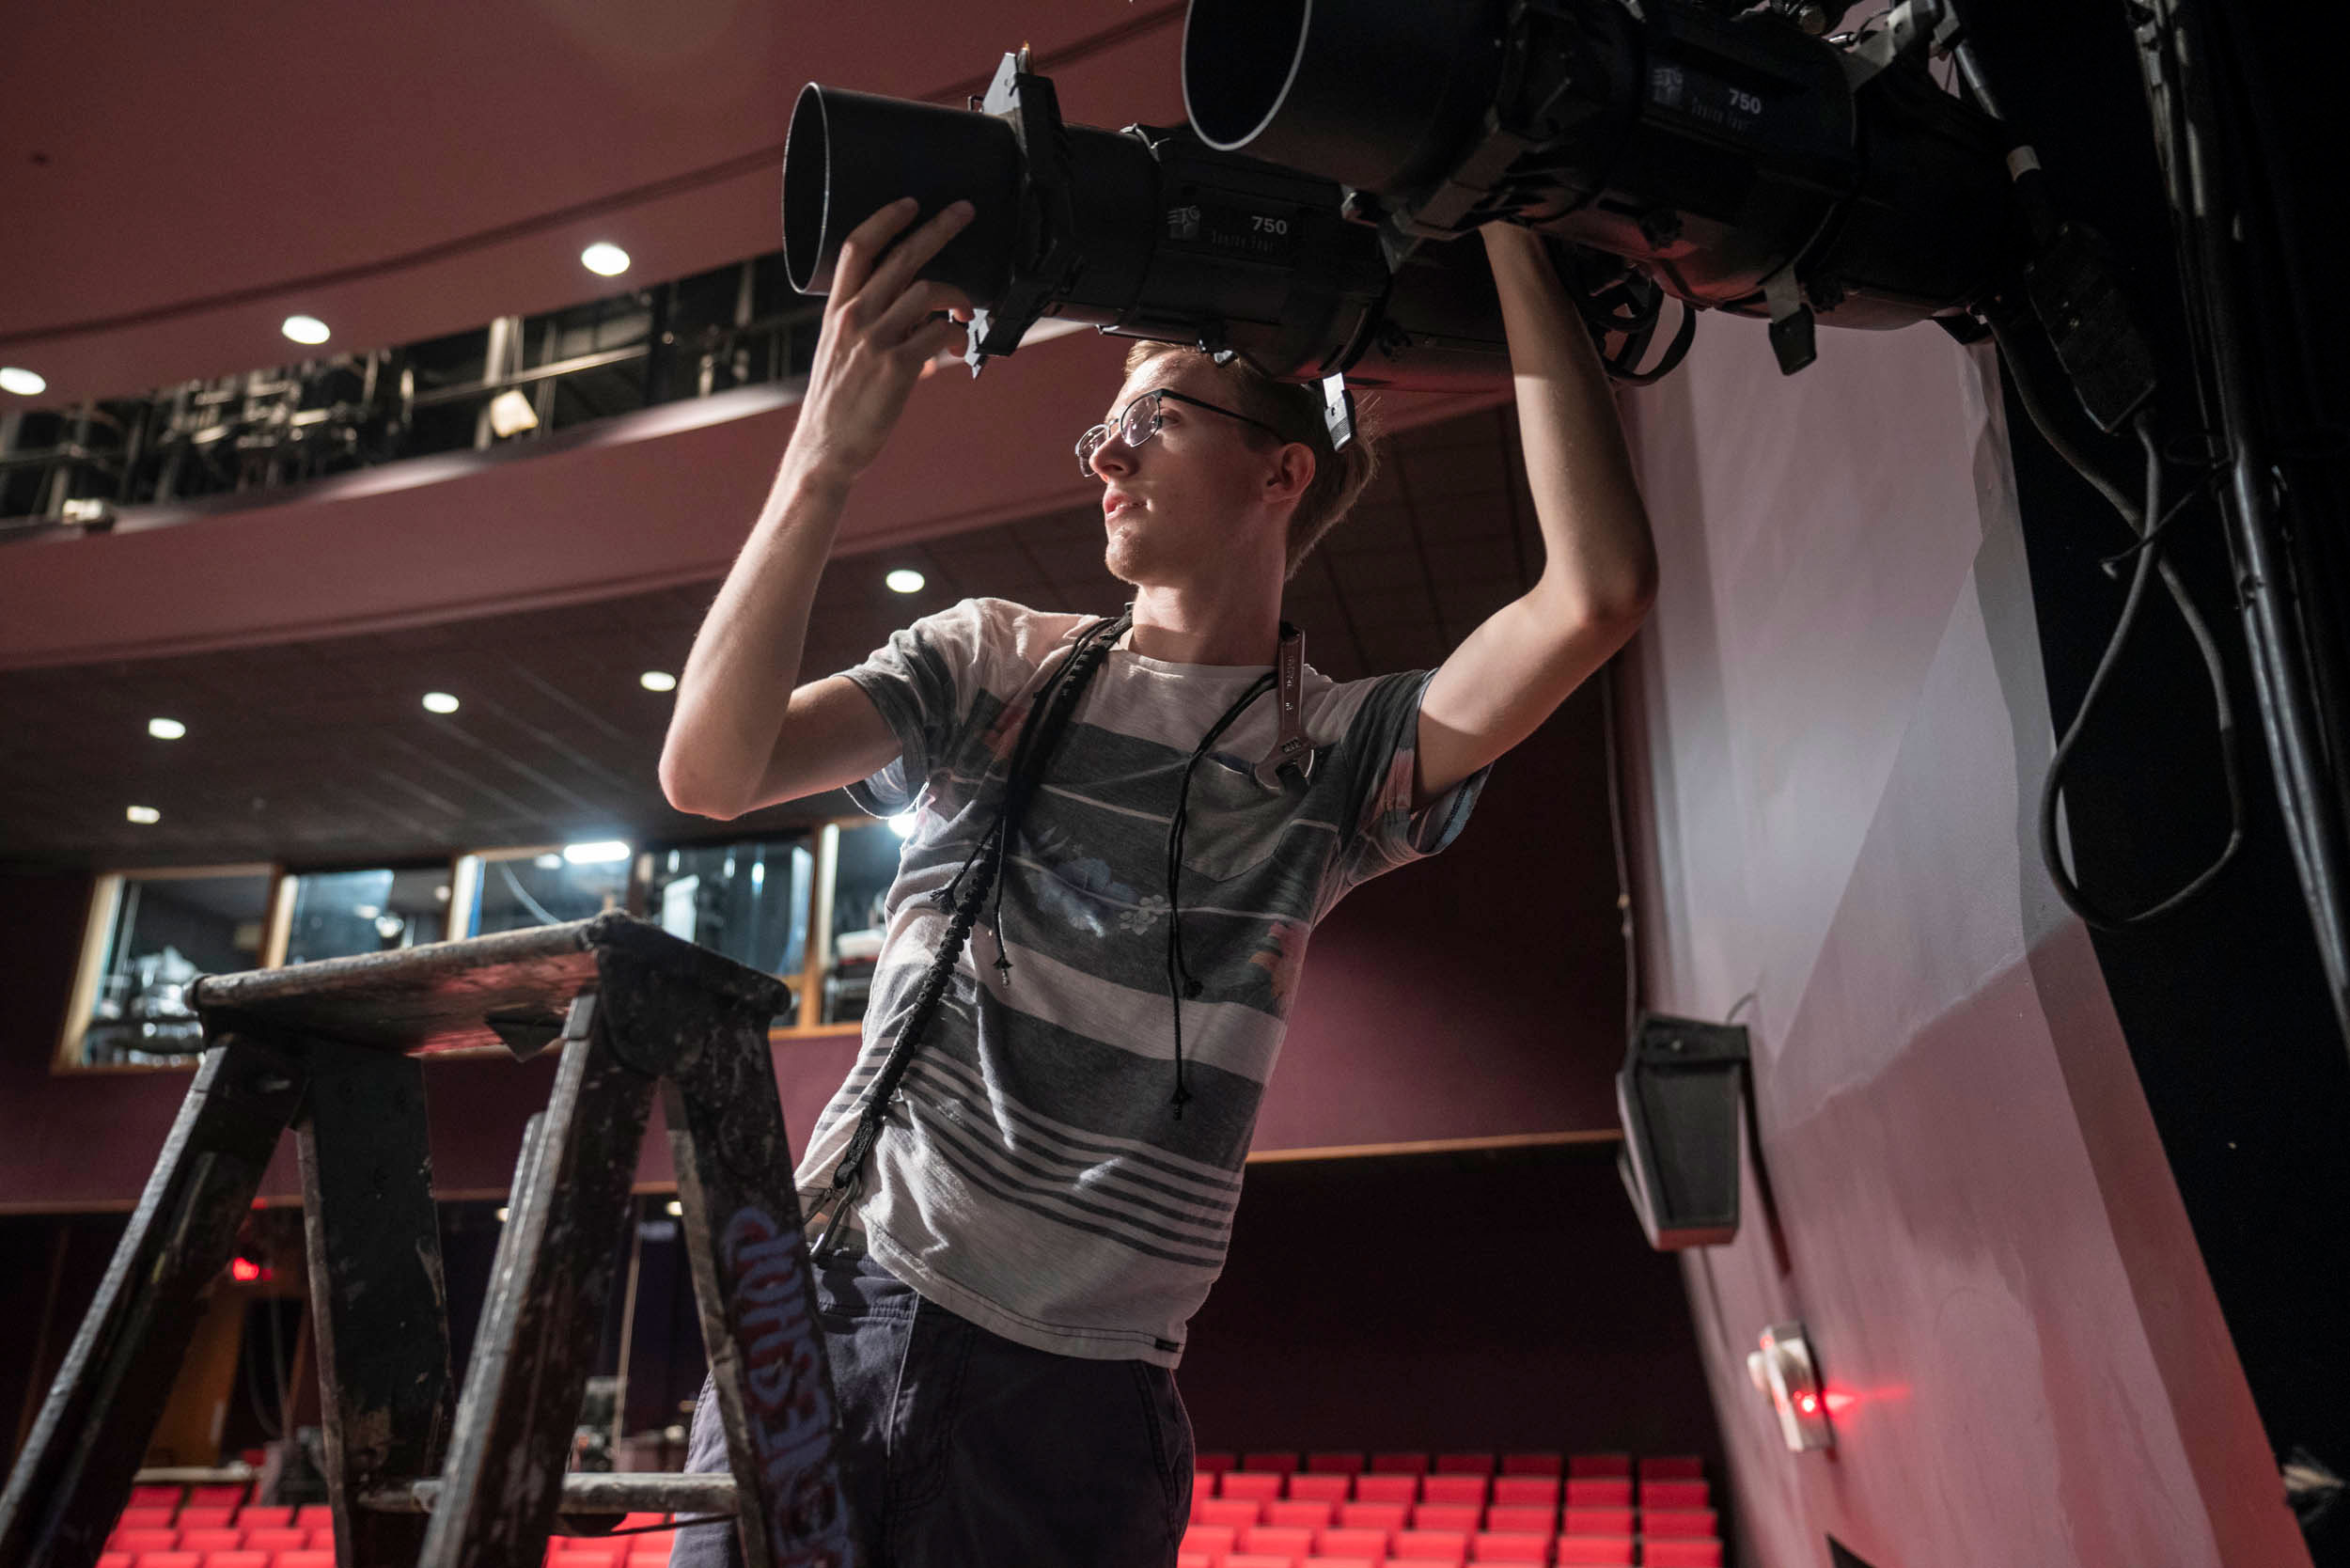 George Pernick adjusting lights on the theatre stage